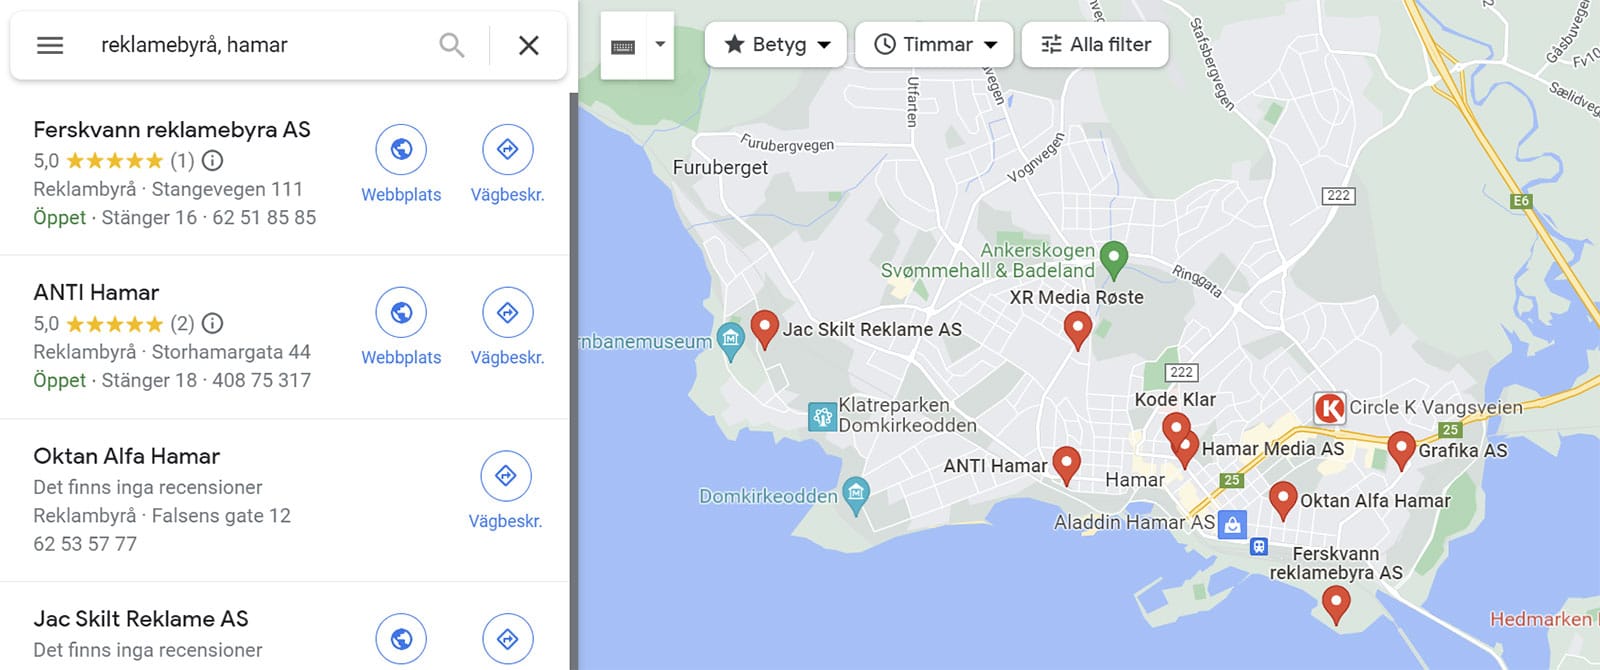 Synlighet i Google Maps med hjelp av lokal SEO og Google My Business